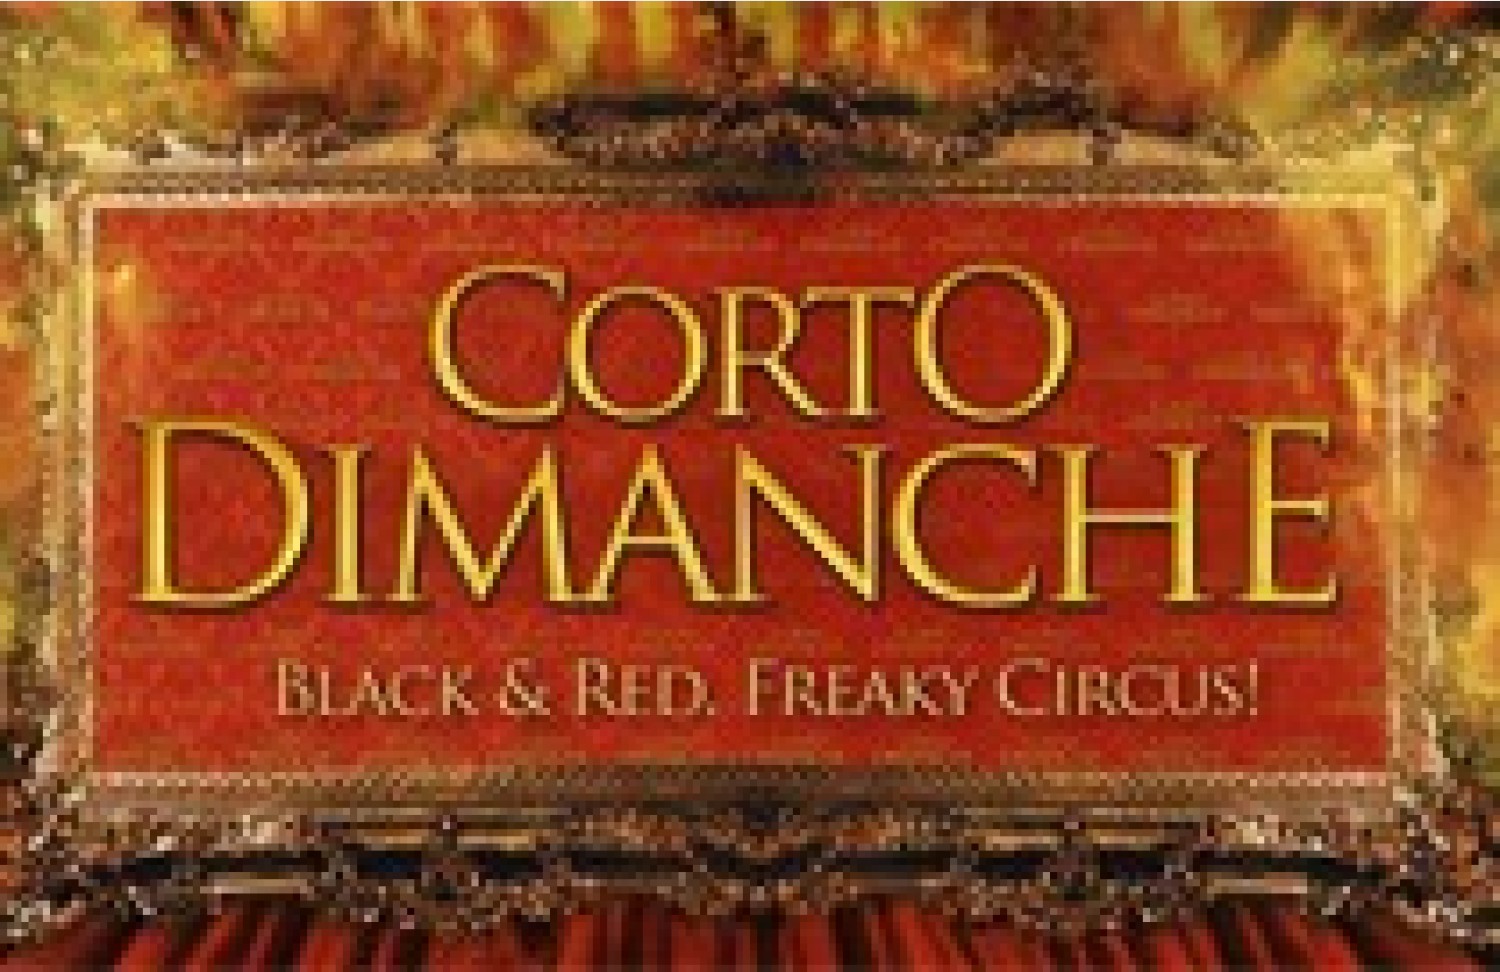 Party nieuws: Corto Dimanche organiseert Le Cirque Rouge in februari